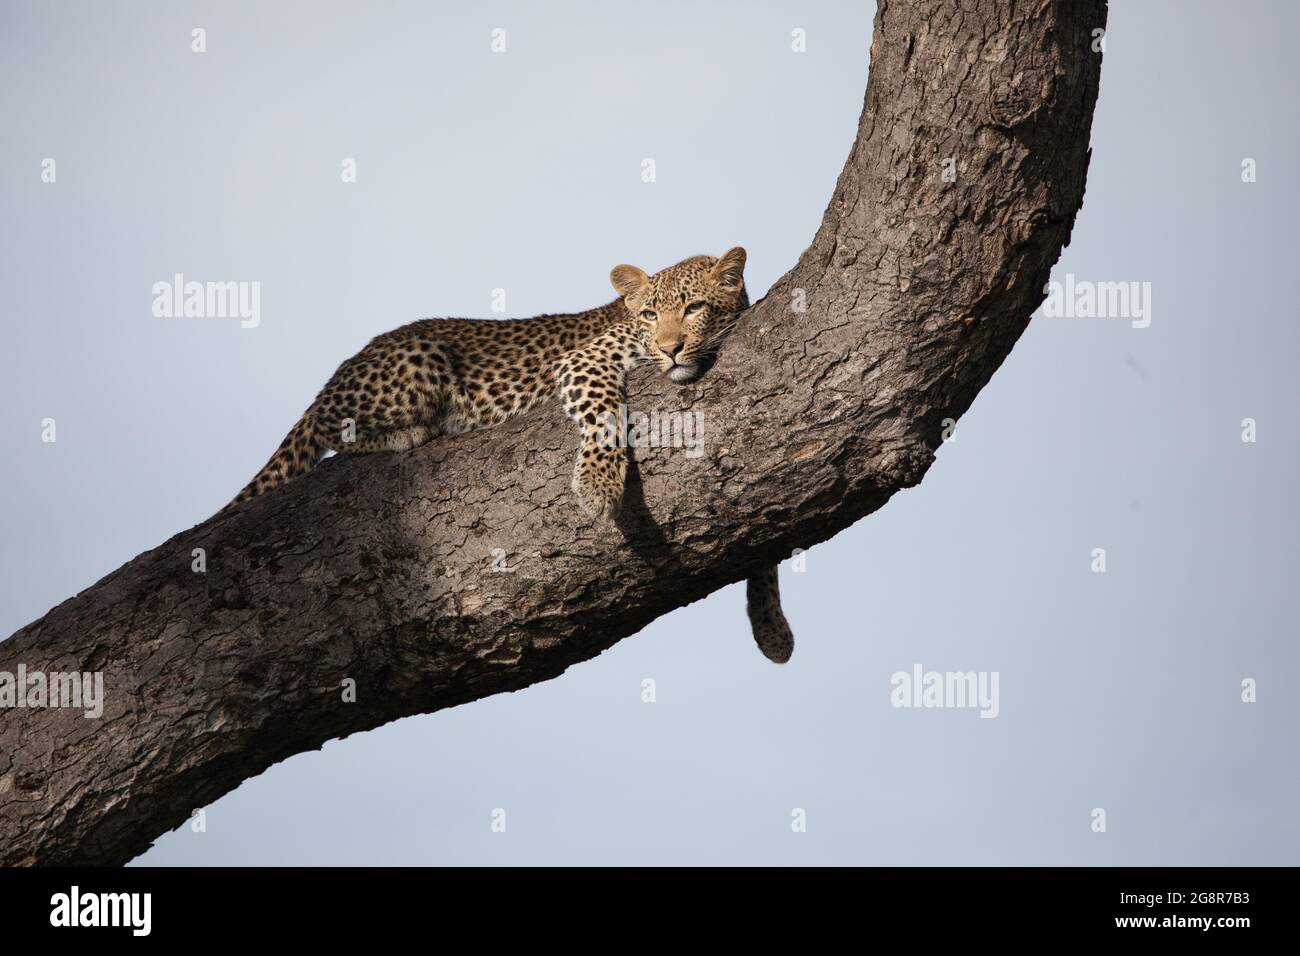 Ein Leopard, Panthera pardus, liegt auf einem Baumstamm, blauer Himmel Hintergrund Stockfoto